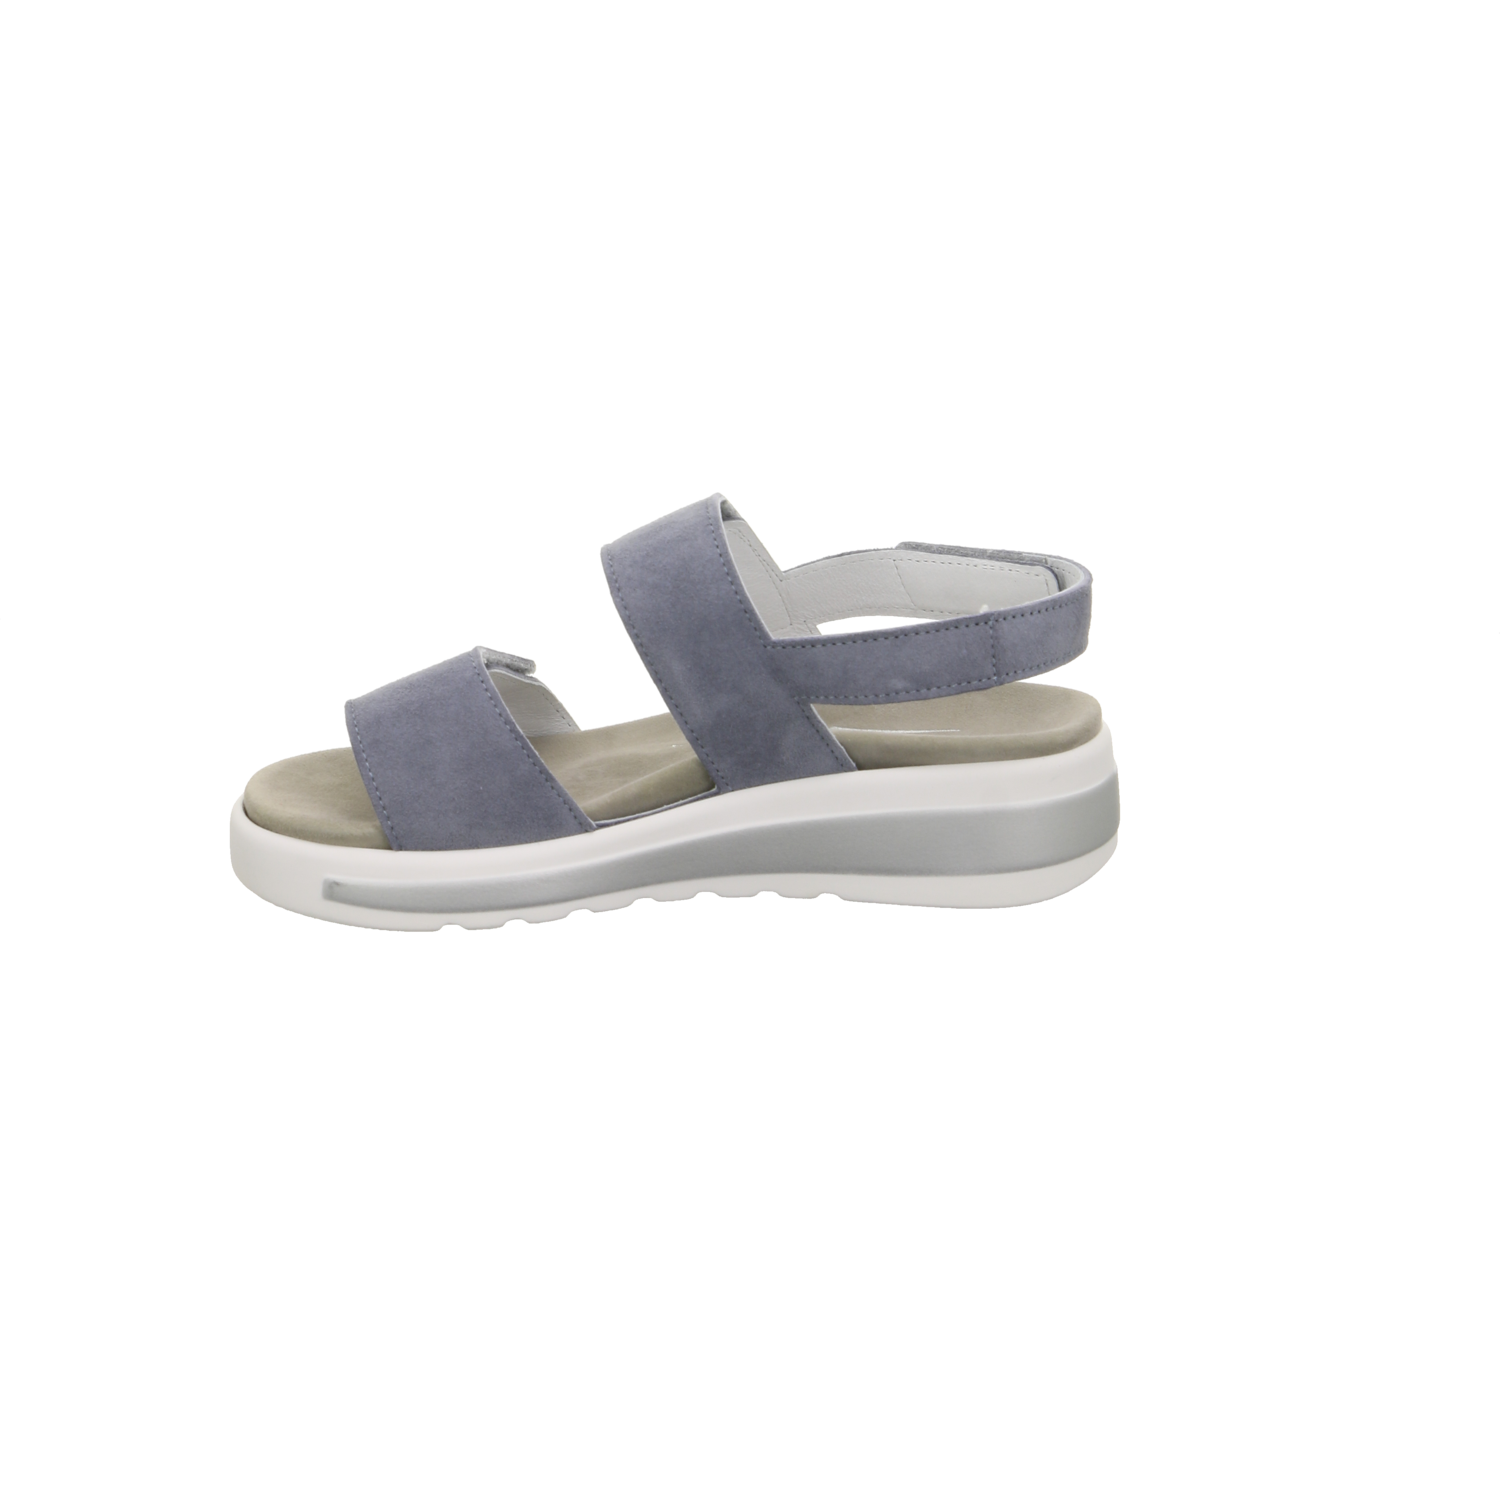 Semler Comfort-Sandalette SKY